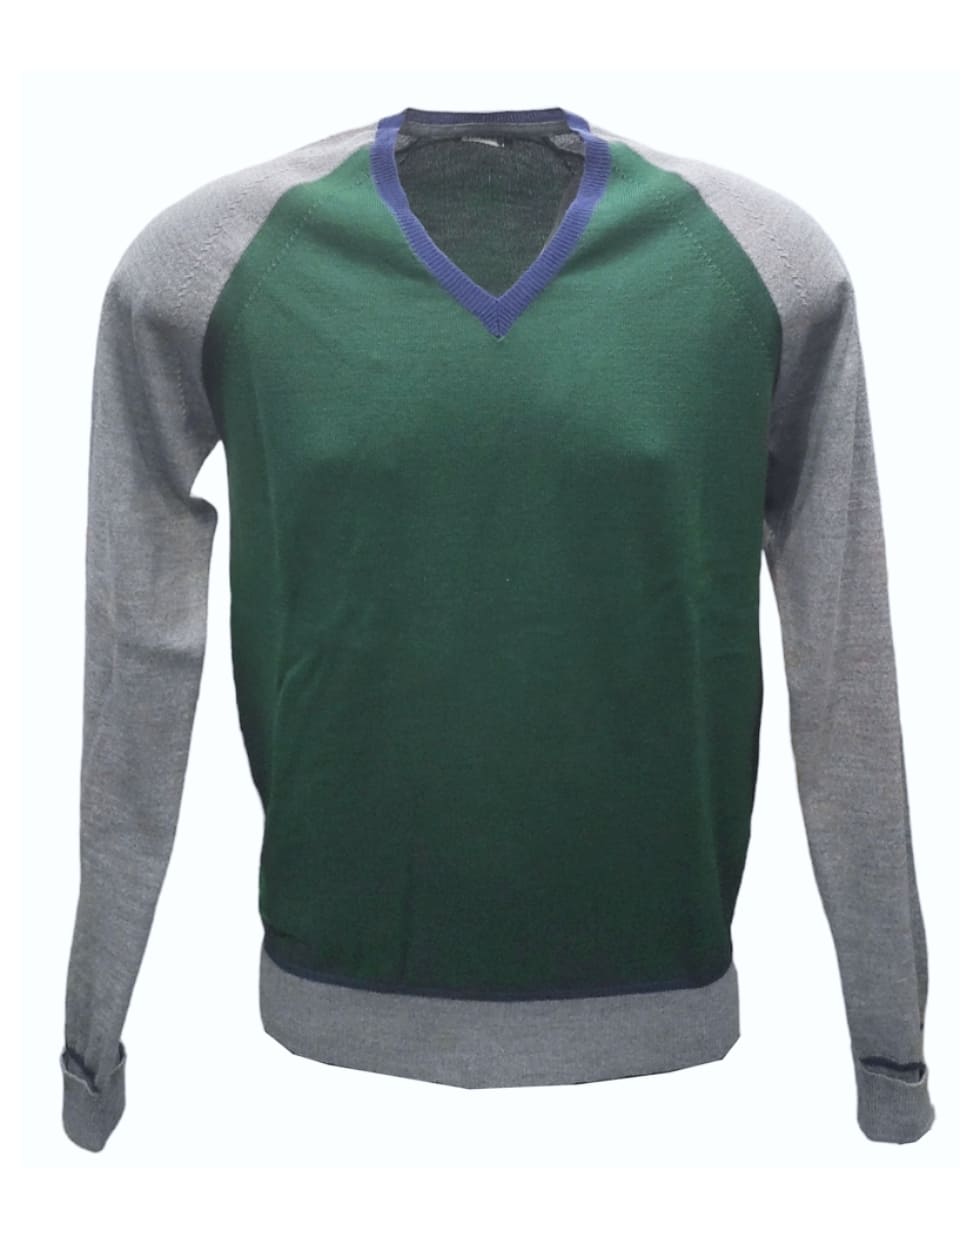 Maglione con scollo a V in lana rasata- verde e grigio - BRAMANTE